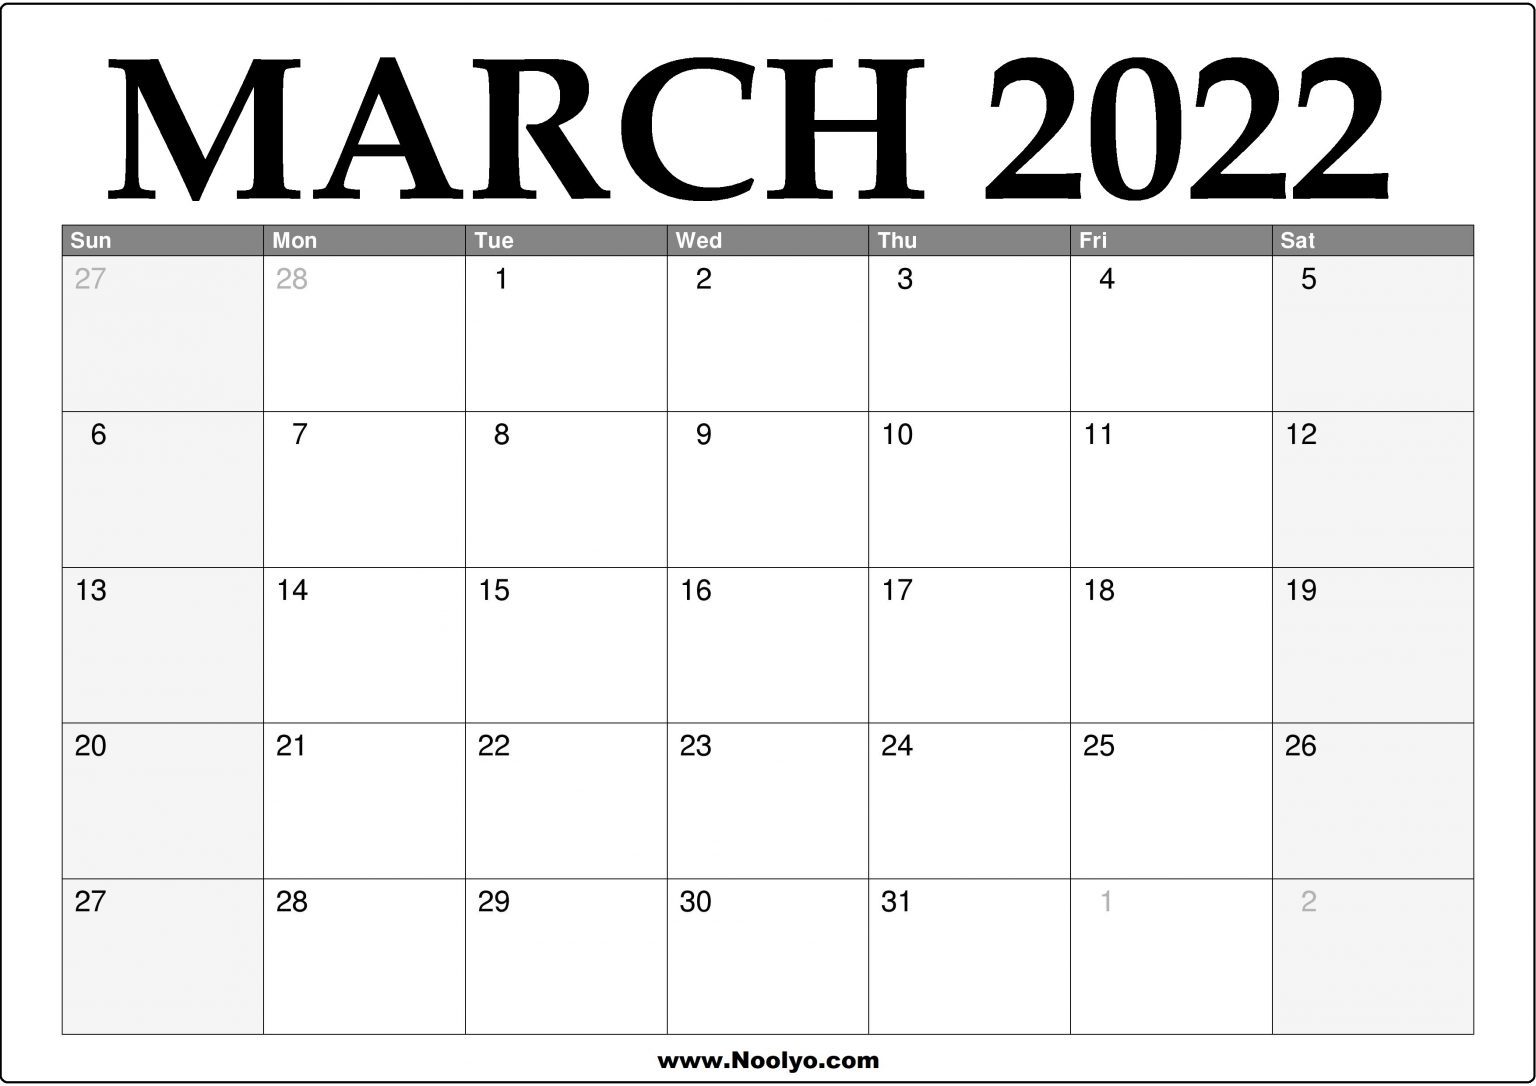 Catch Calendar 2022 March Holi